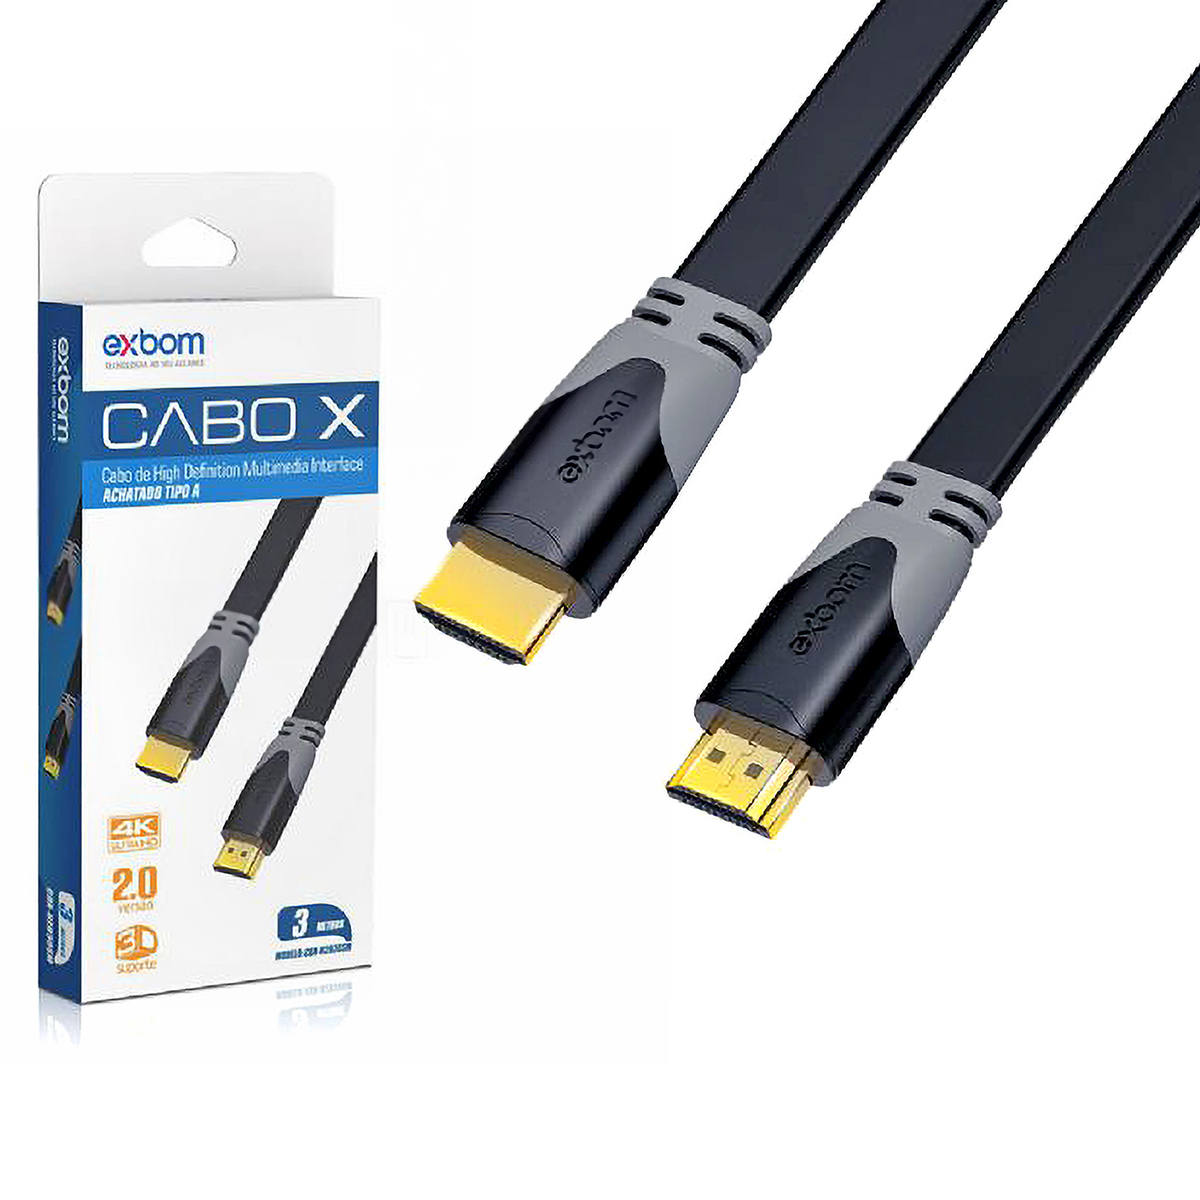 Cabo HDMI 4K v2.0 Flat Achatado Suporte 3D Ultra HD 1080/2160p com 3 metros Exbom CBX-H2B30SM